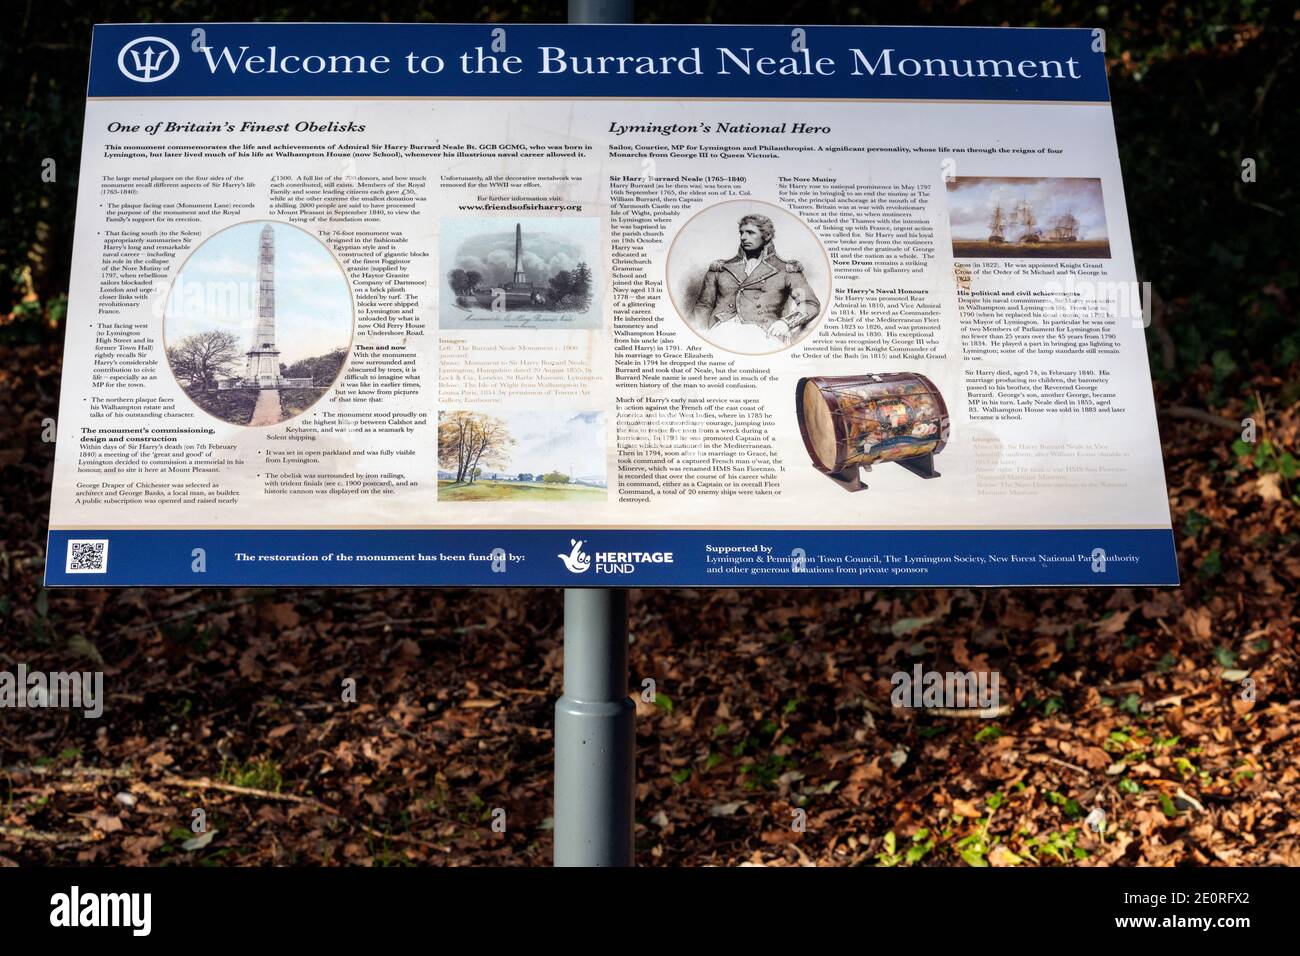 Bienvenue au panneau pour le Burrard Neale Monument, Walhampton, Lymington, Hampshire, Angleterre, Royaume-Uni Banque D'Images